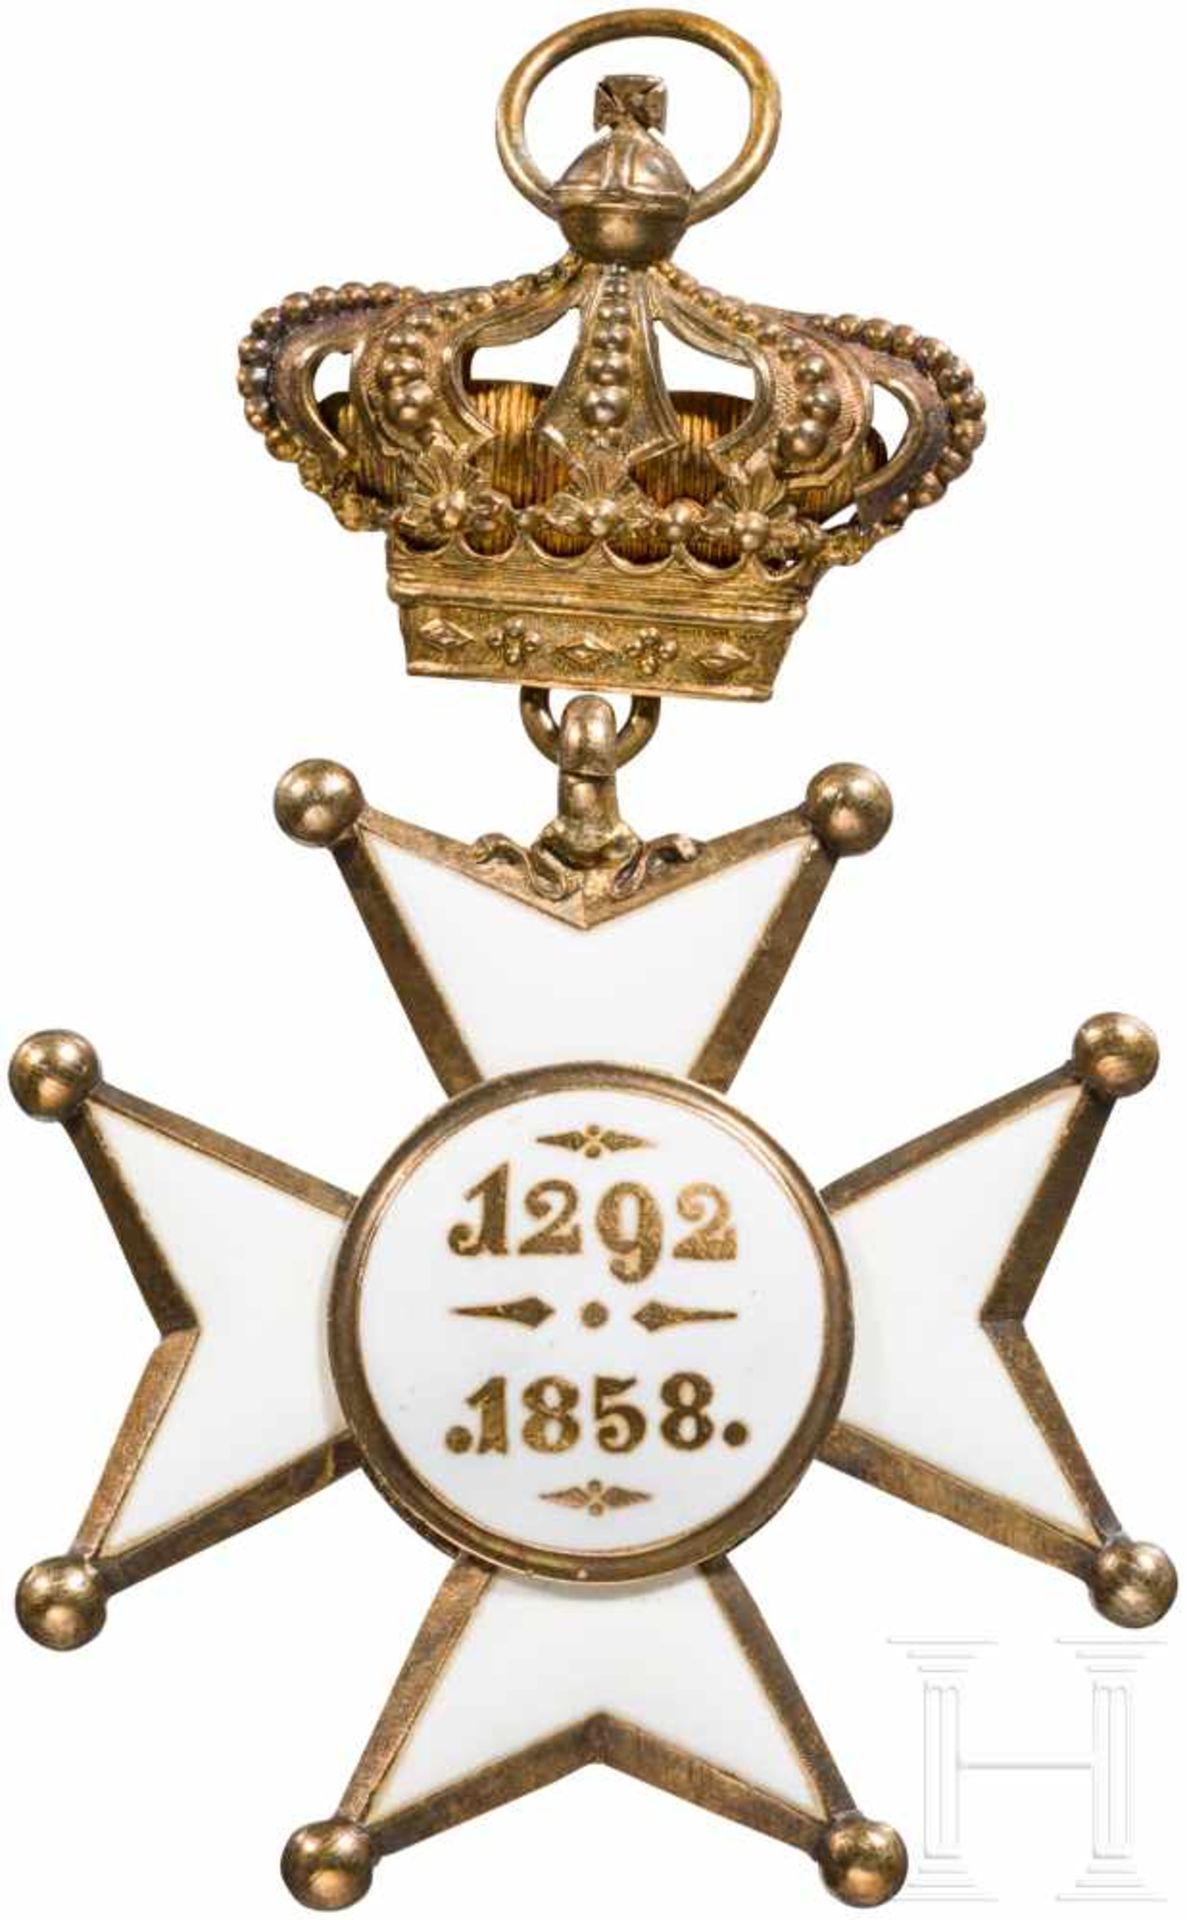 Militär- und Zivil-Verdienst-Orden Adolph von Nassau, KomturkreuzSilber, vergoldet, teils - Bild 2 aus 2